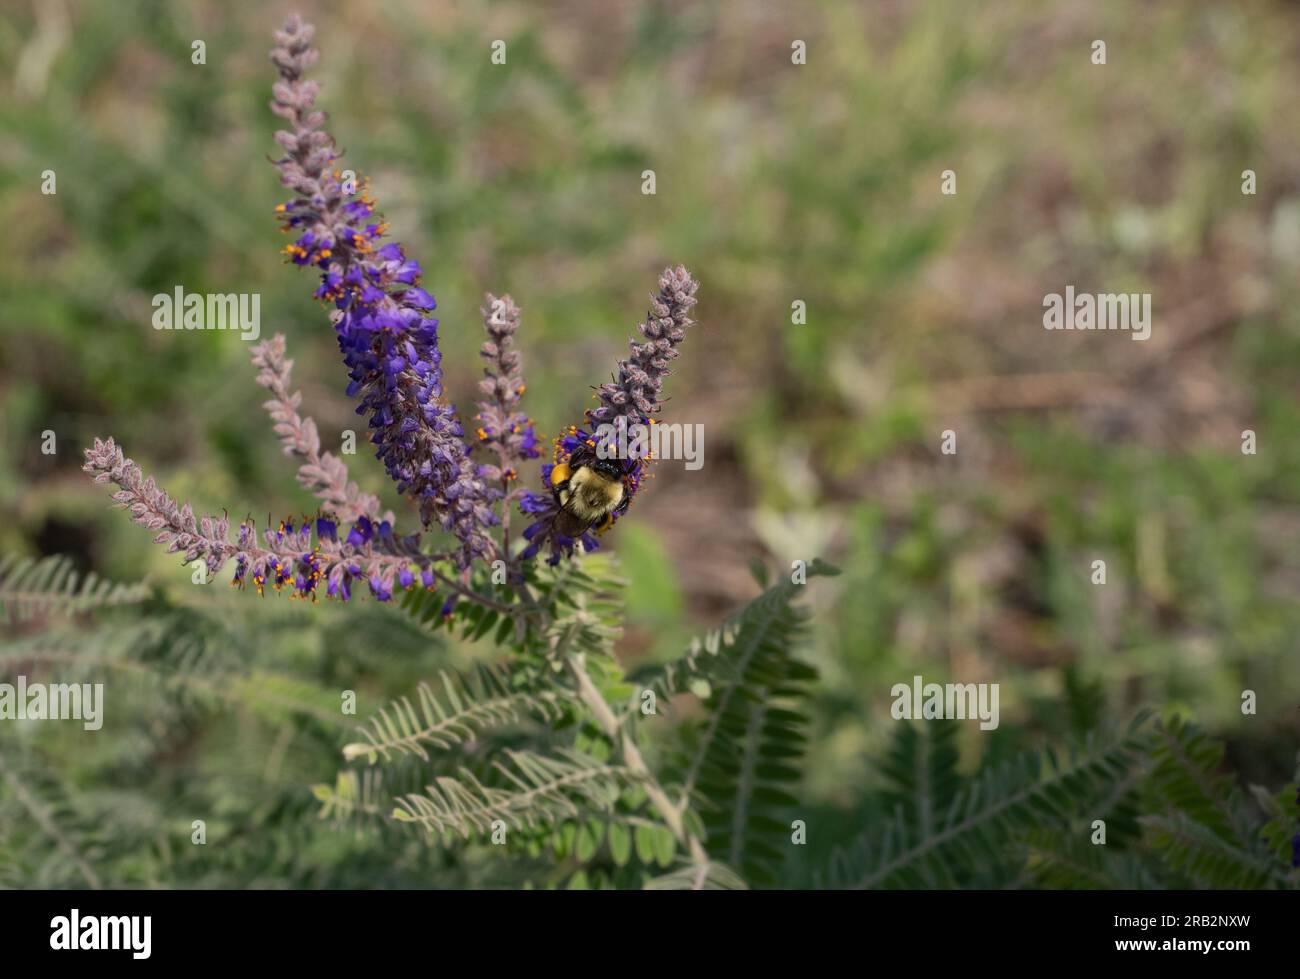 Hummeln mit vollen Pollenkörben sammeln mehr Pollen aus violetten Blüten auf einer Bleipflanze oder Amorpha canescens in Minnesota. Bild hat Speicherplatz zum Kopieren. Stockfoto